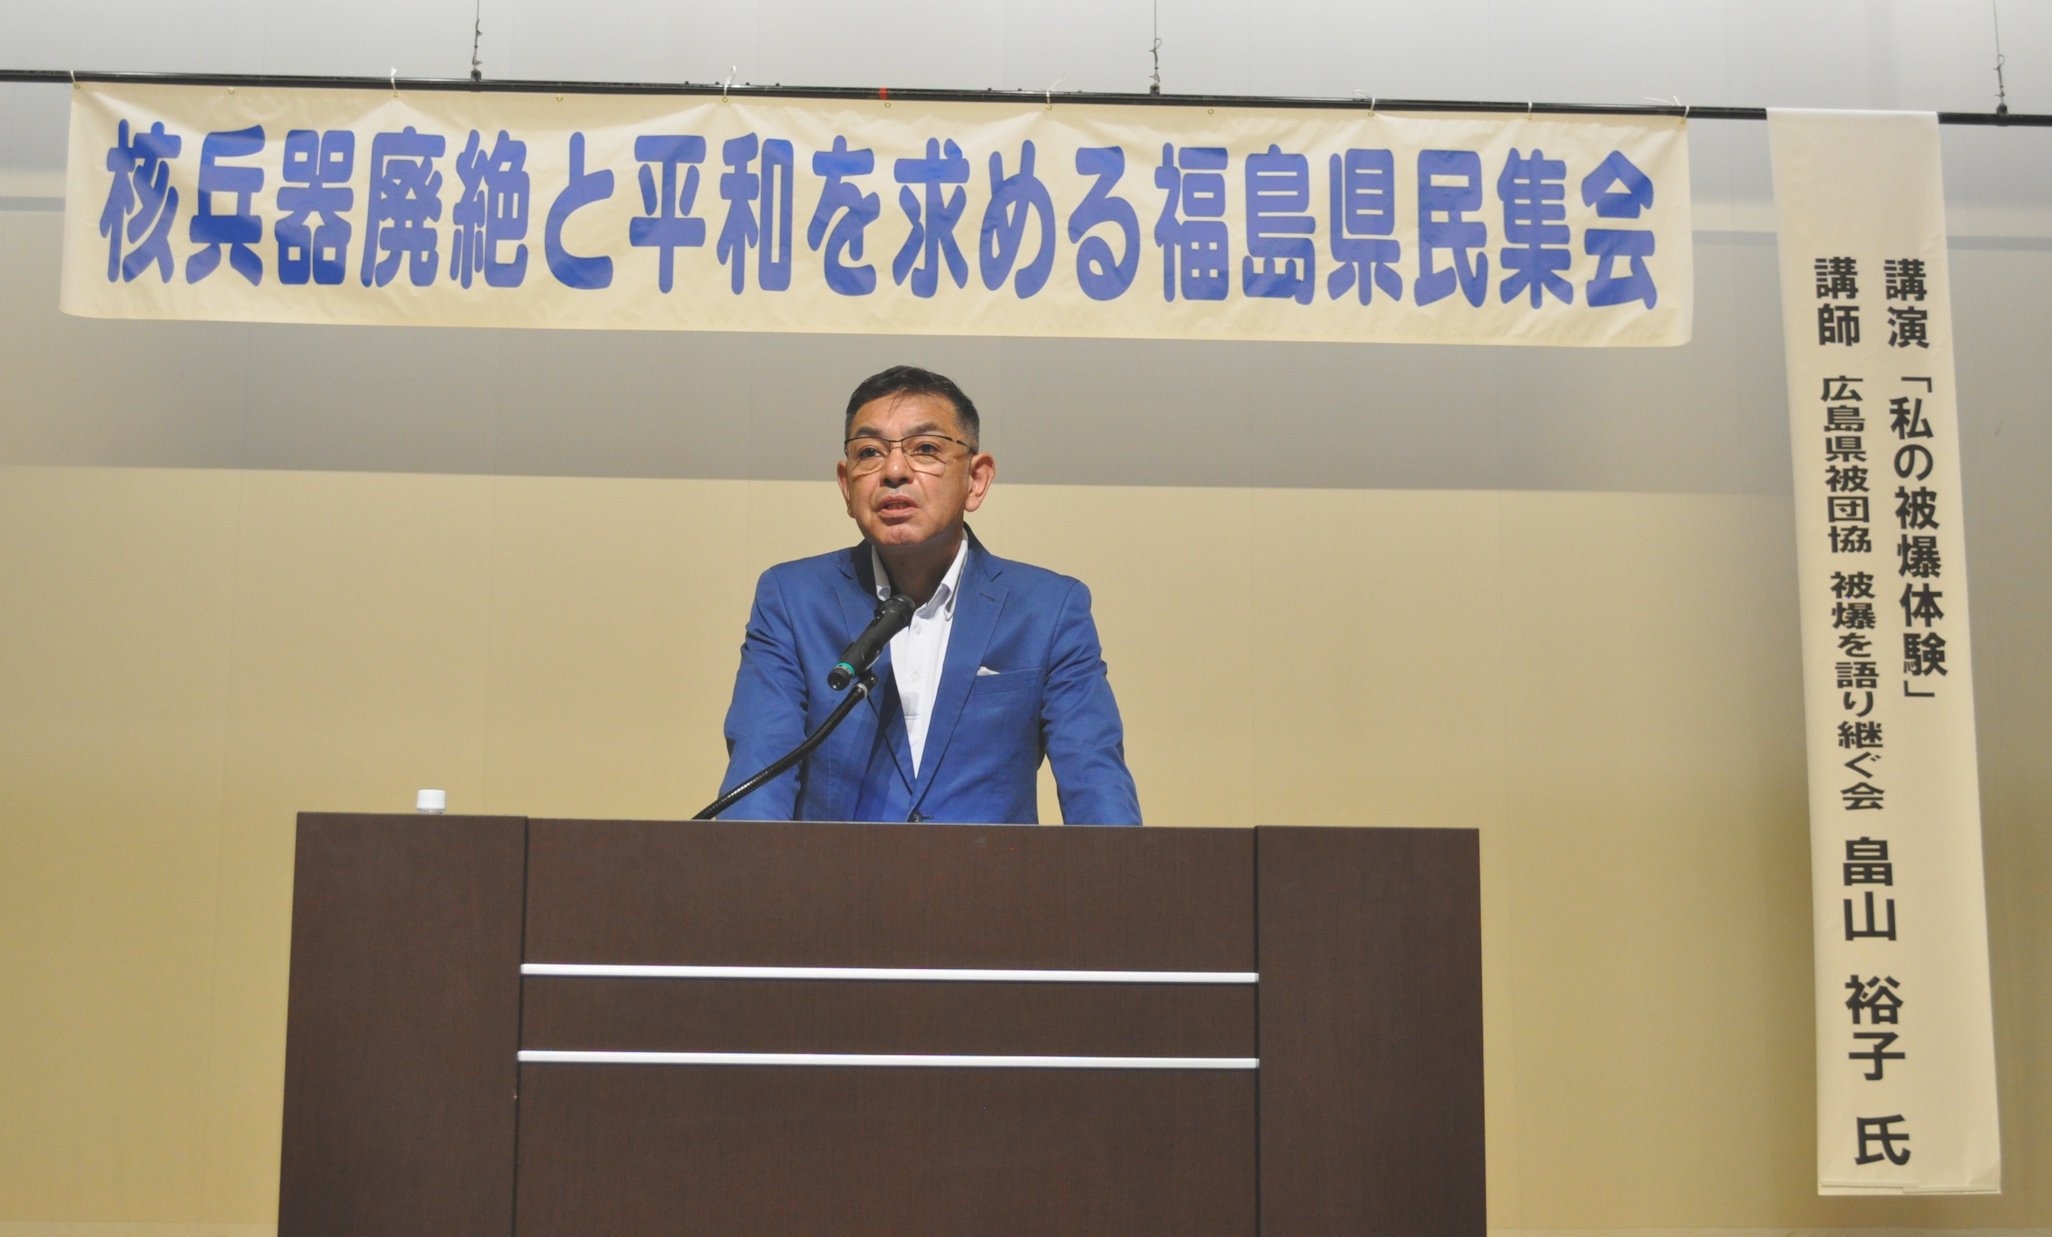 連合福島「核兵器廃絶と平和を求める福島県民集会」